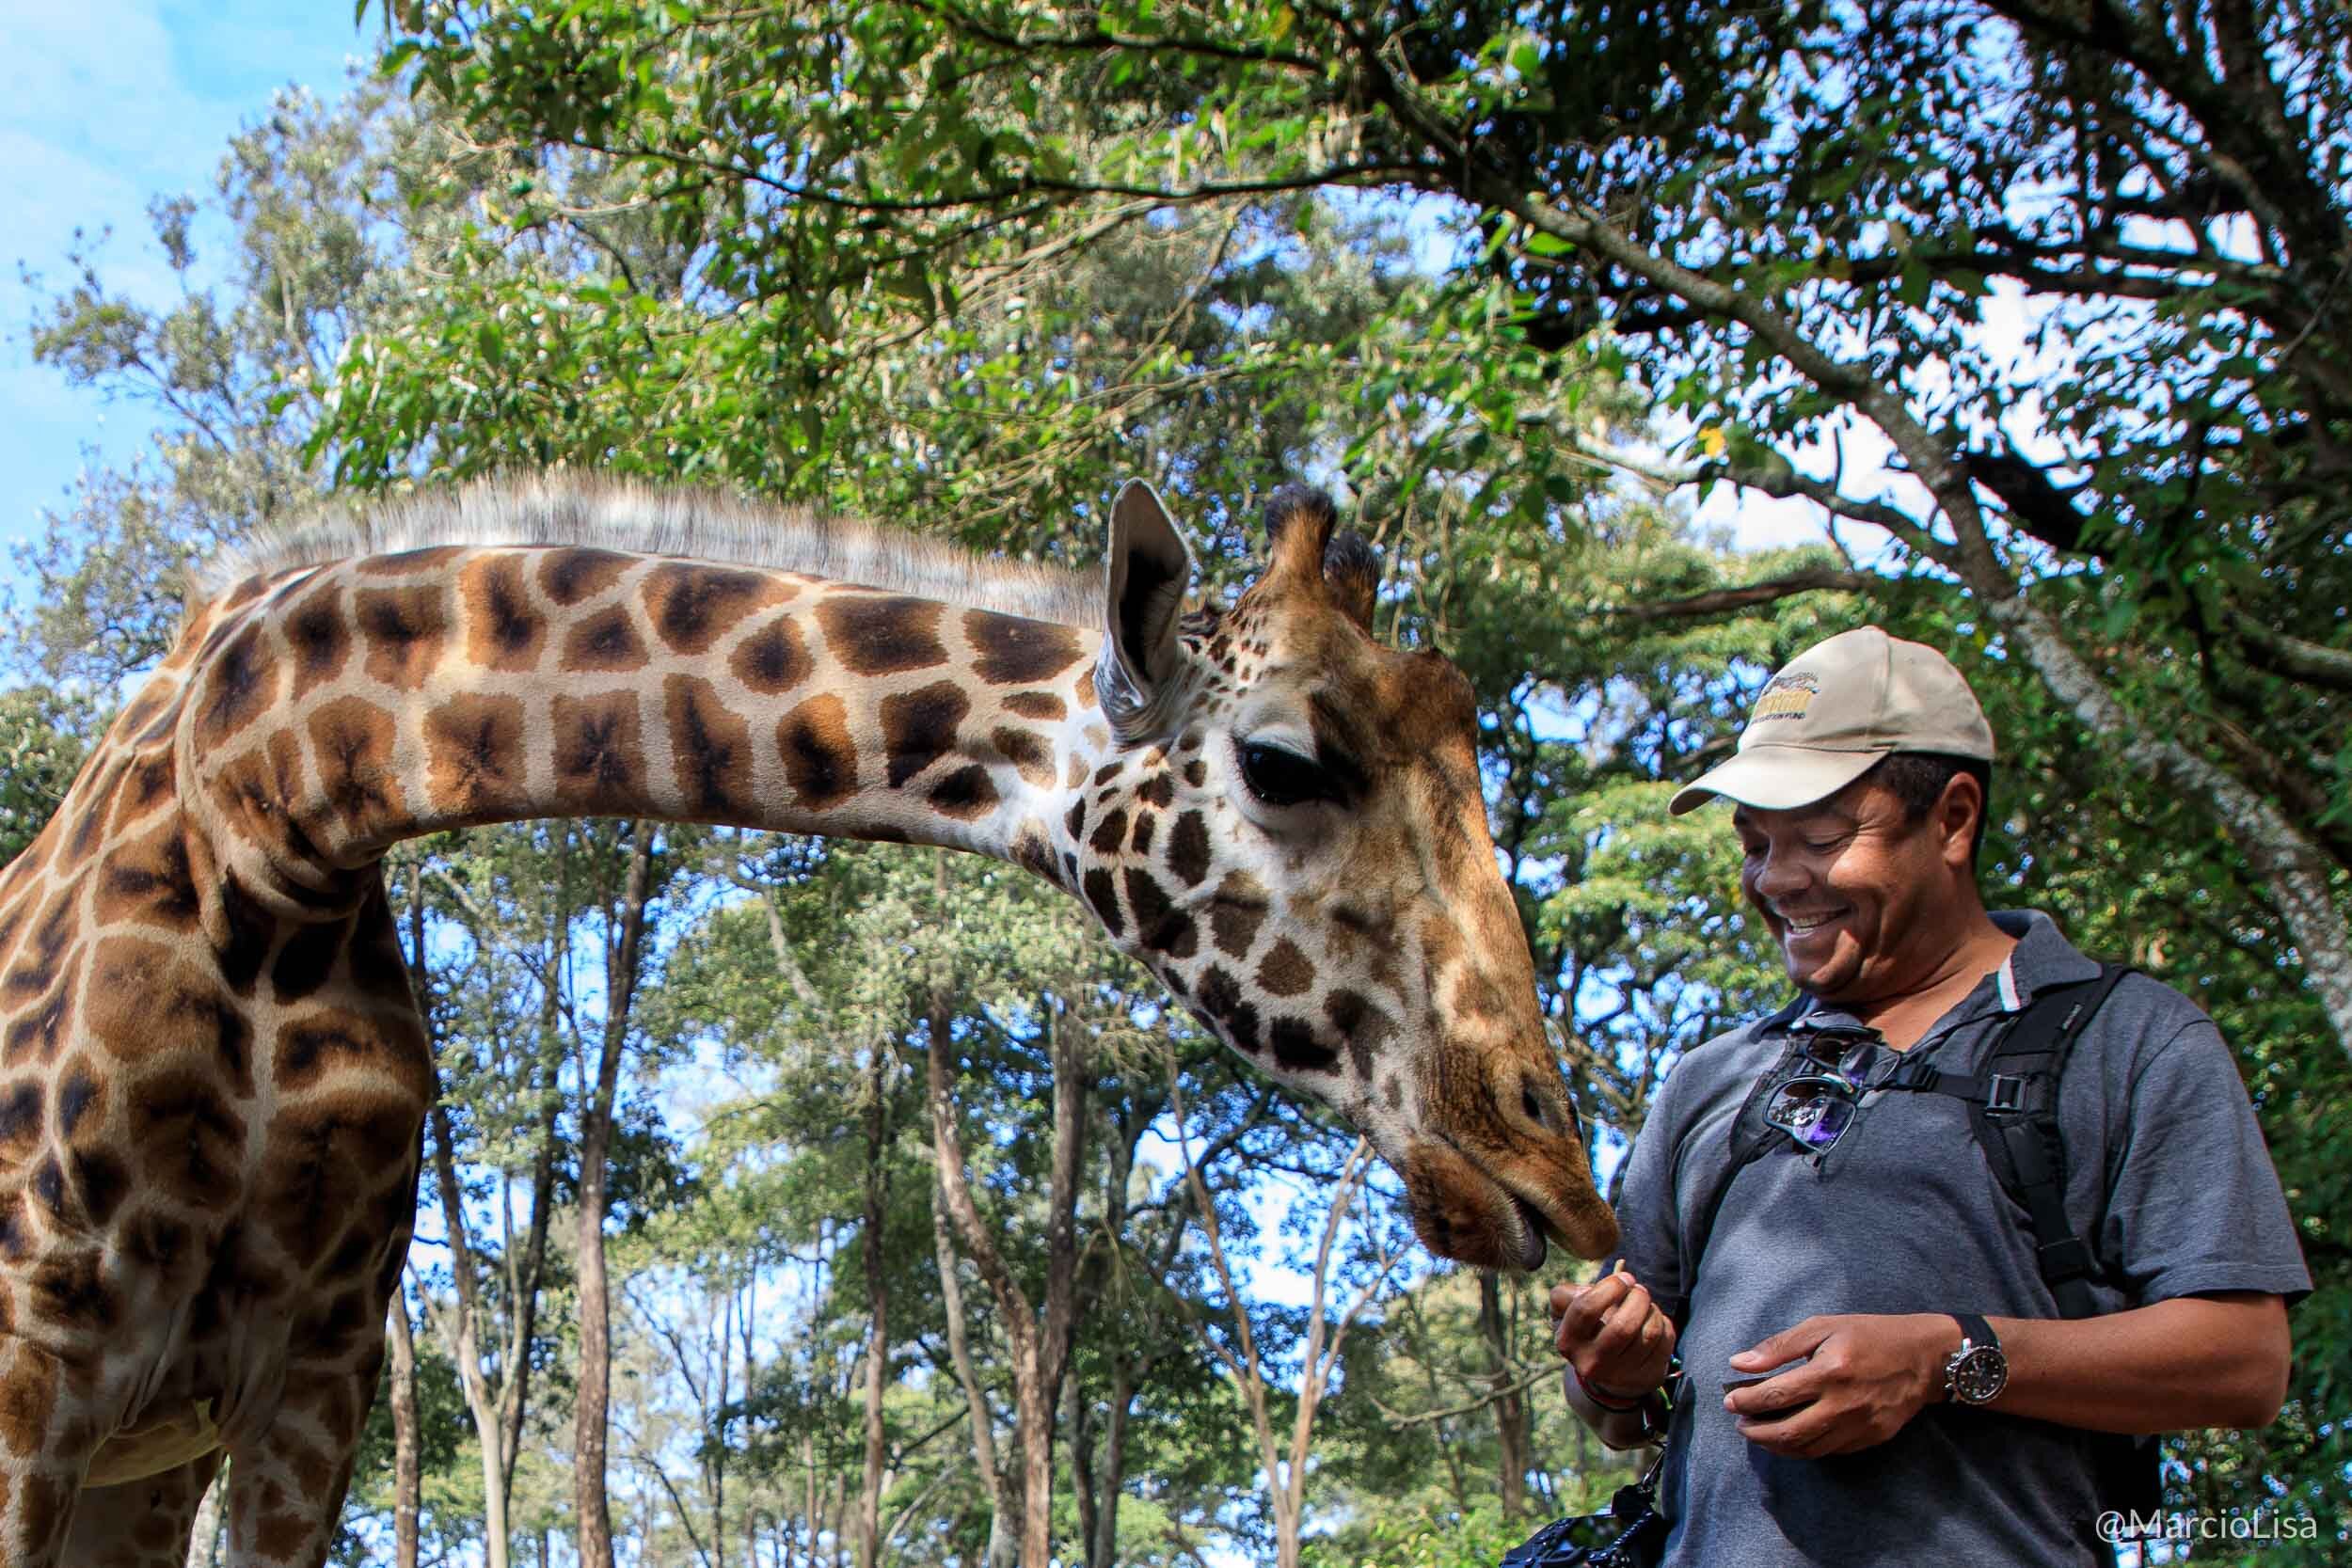 Alimentando uma girafa de Rothschild no santuário Giraffe Centre em Nairobi, Quenia